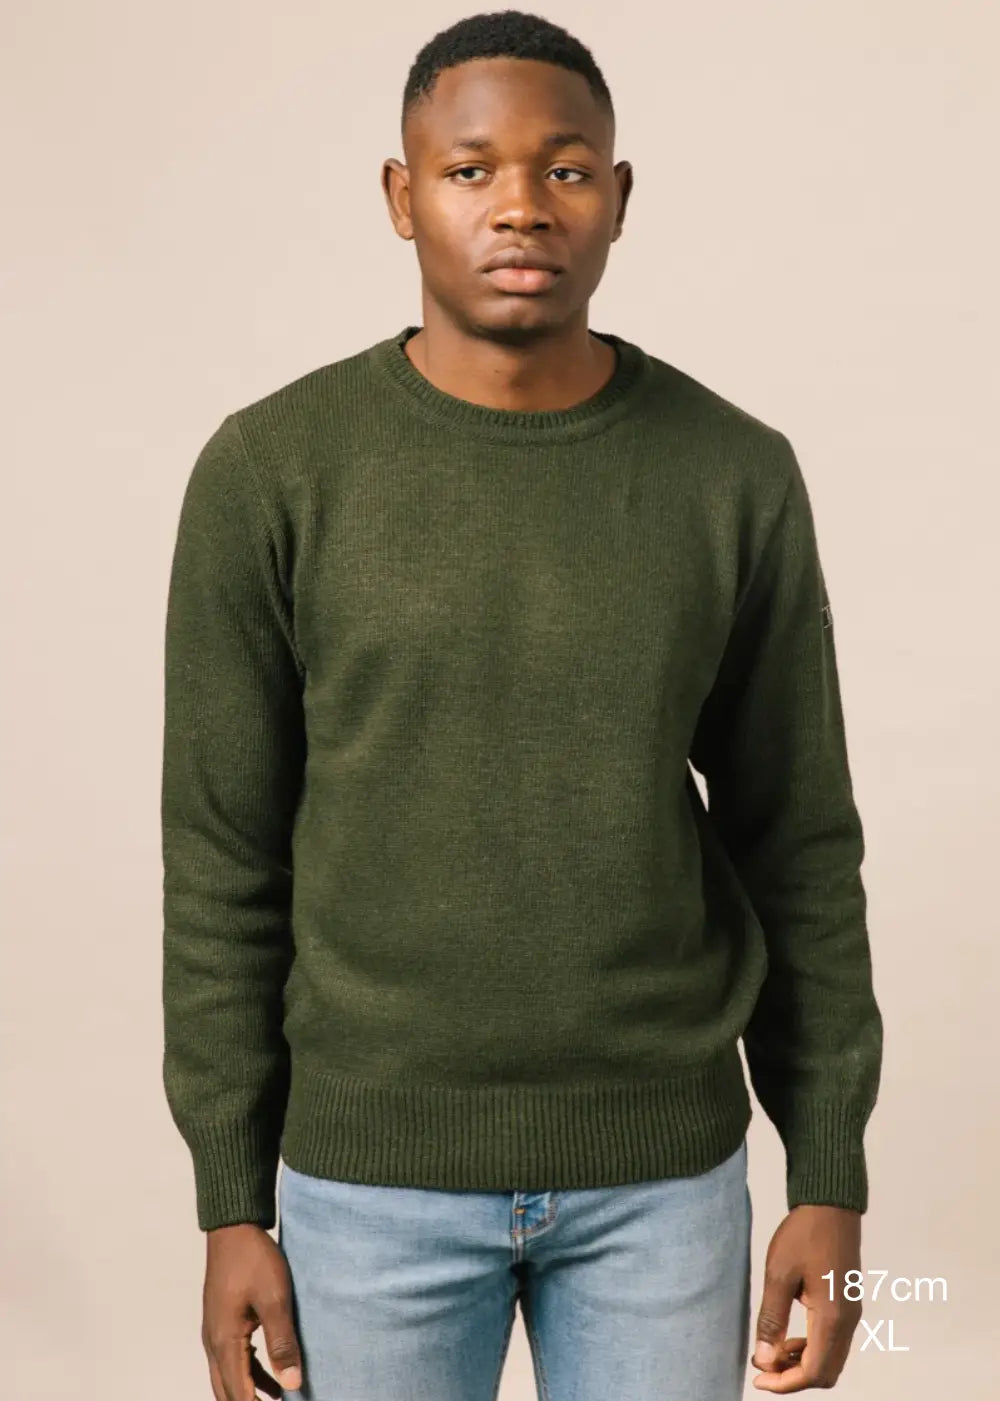 Fotografia de mig cos en la qual es detalla alçada del model (187cm) i la talla de la seva jersei (XL).